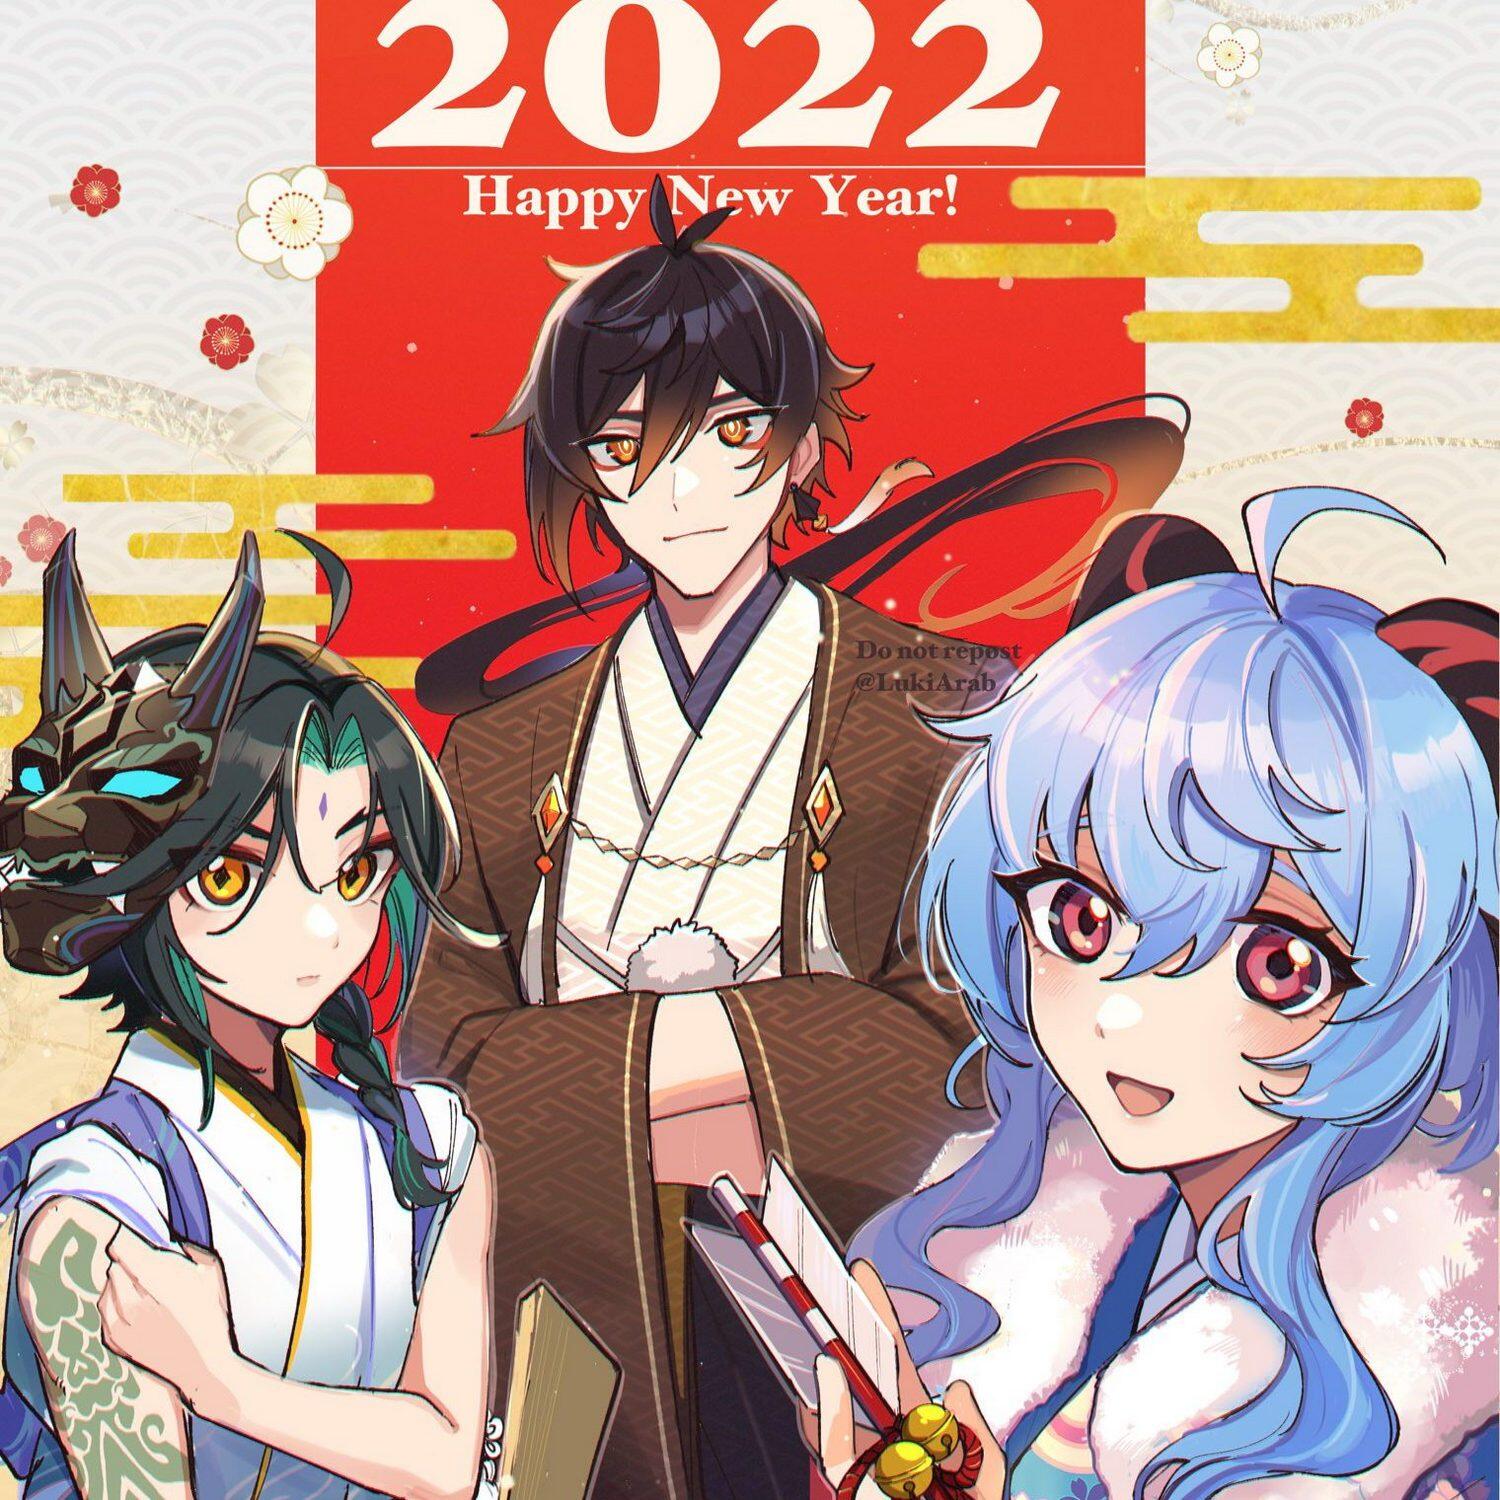 【新年图集】2022 虎年图集 第3弹